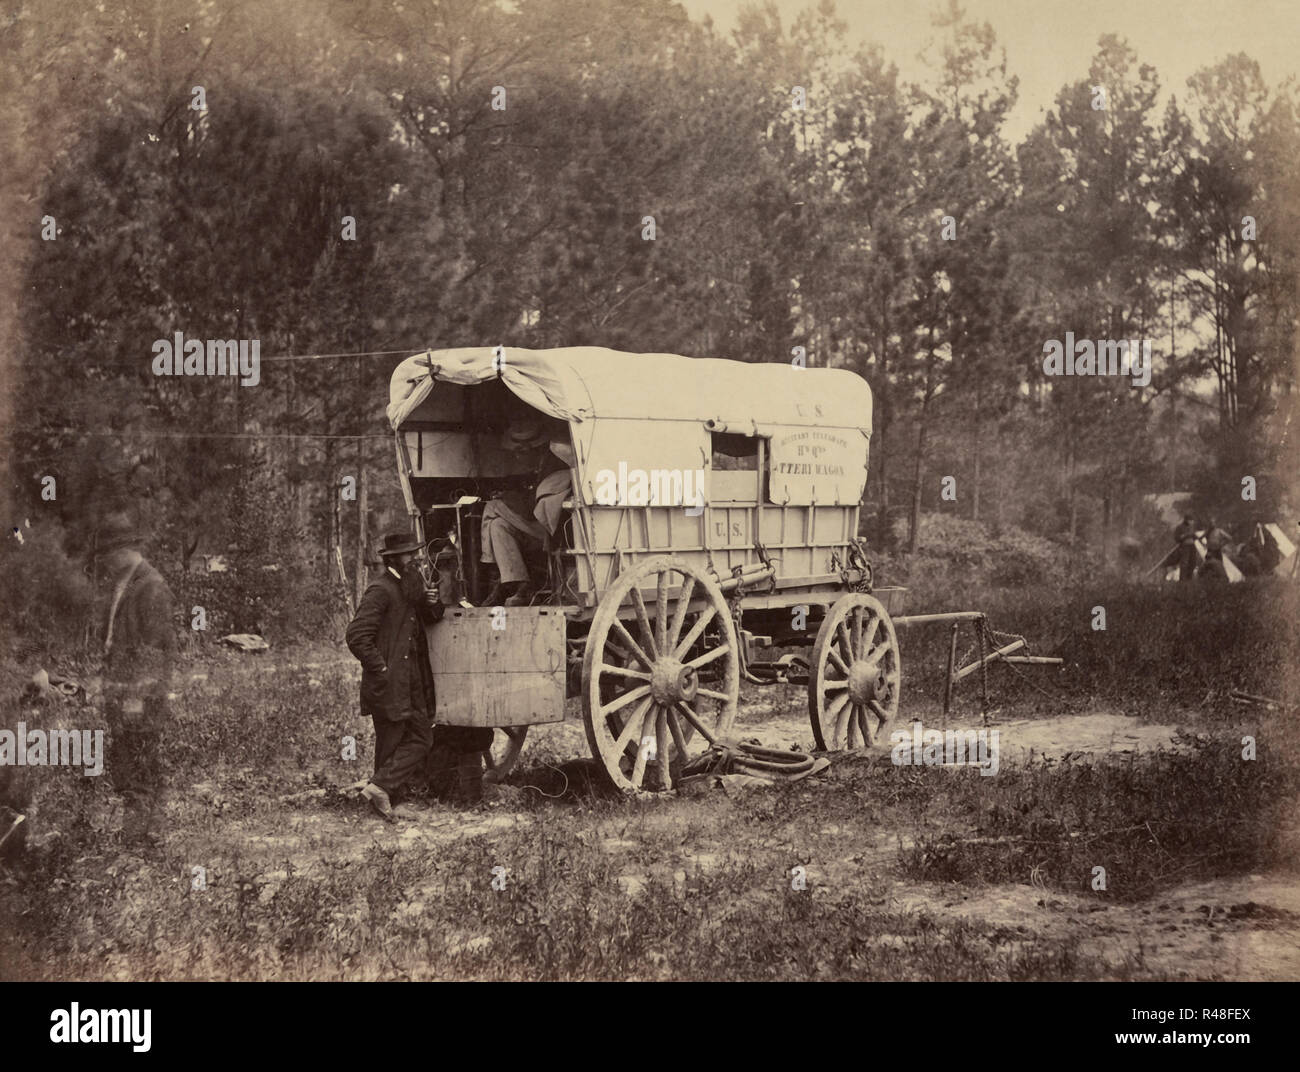 Telegraph sur le terrain - chariot batterie Photographie montrant le wagon dans lequel la batterie utilisée pour alimenter le système de télégraphe a été menée sur le terrain, vers 1864 Banque D'Images